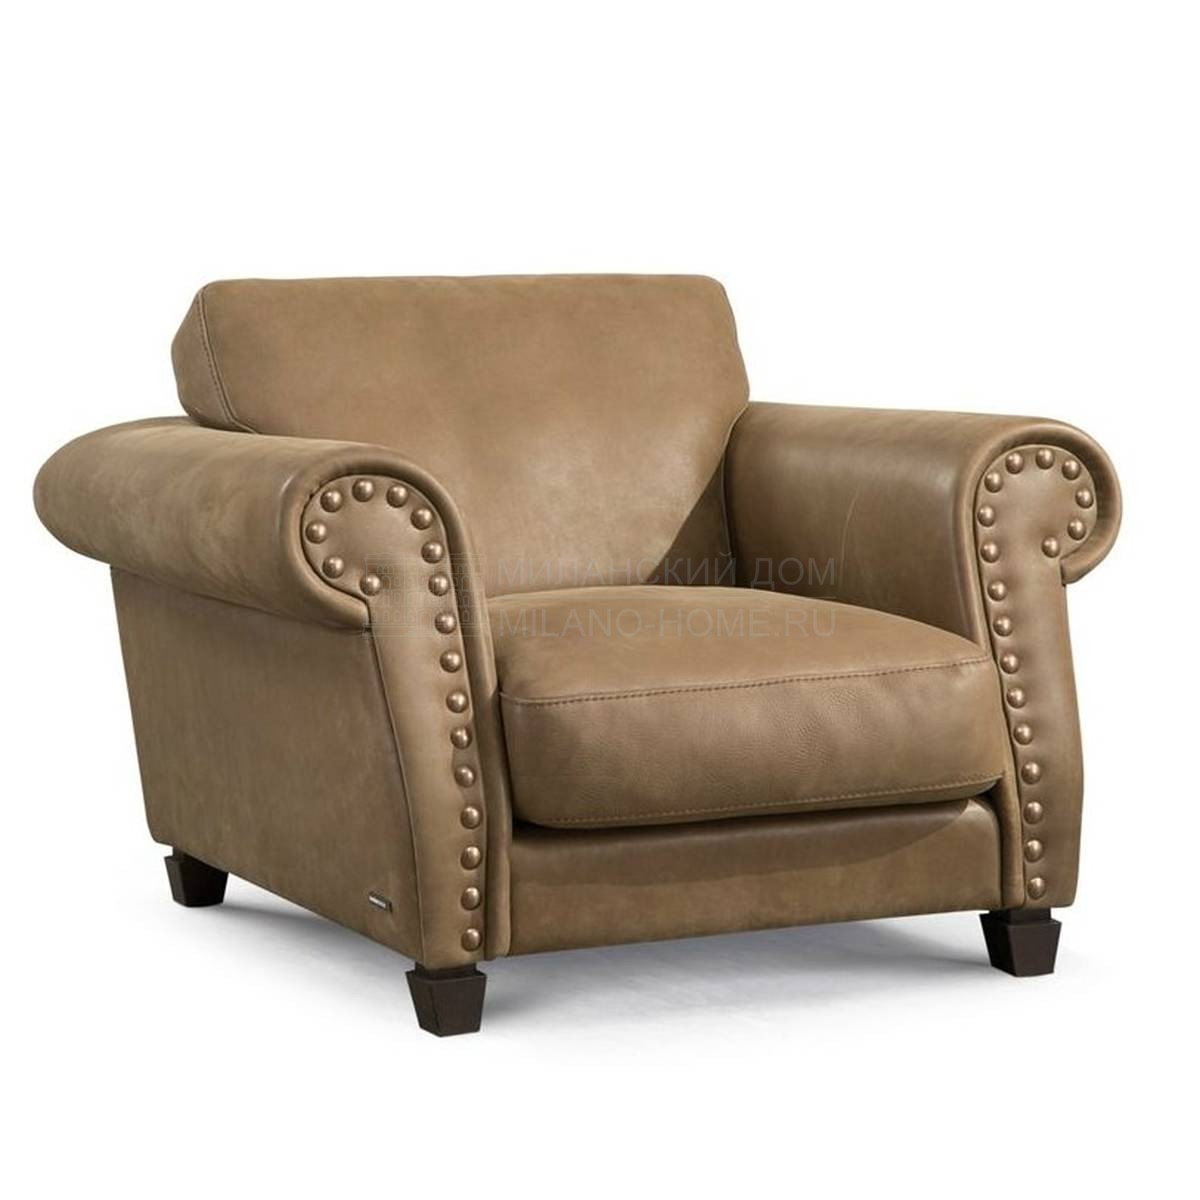 Кожаное кресло Variations armchair из Франции фабрики ROCHE BOBOIS